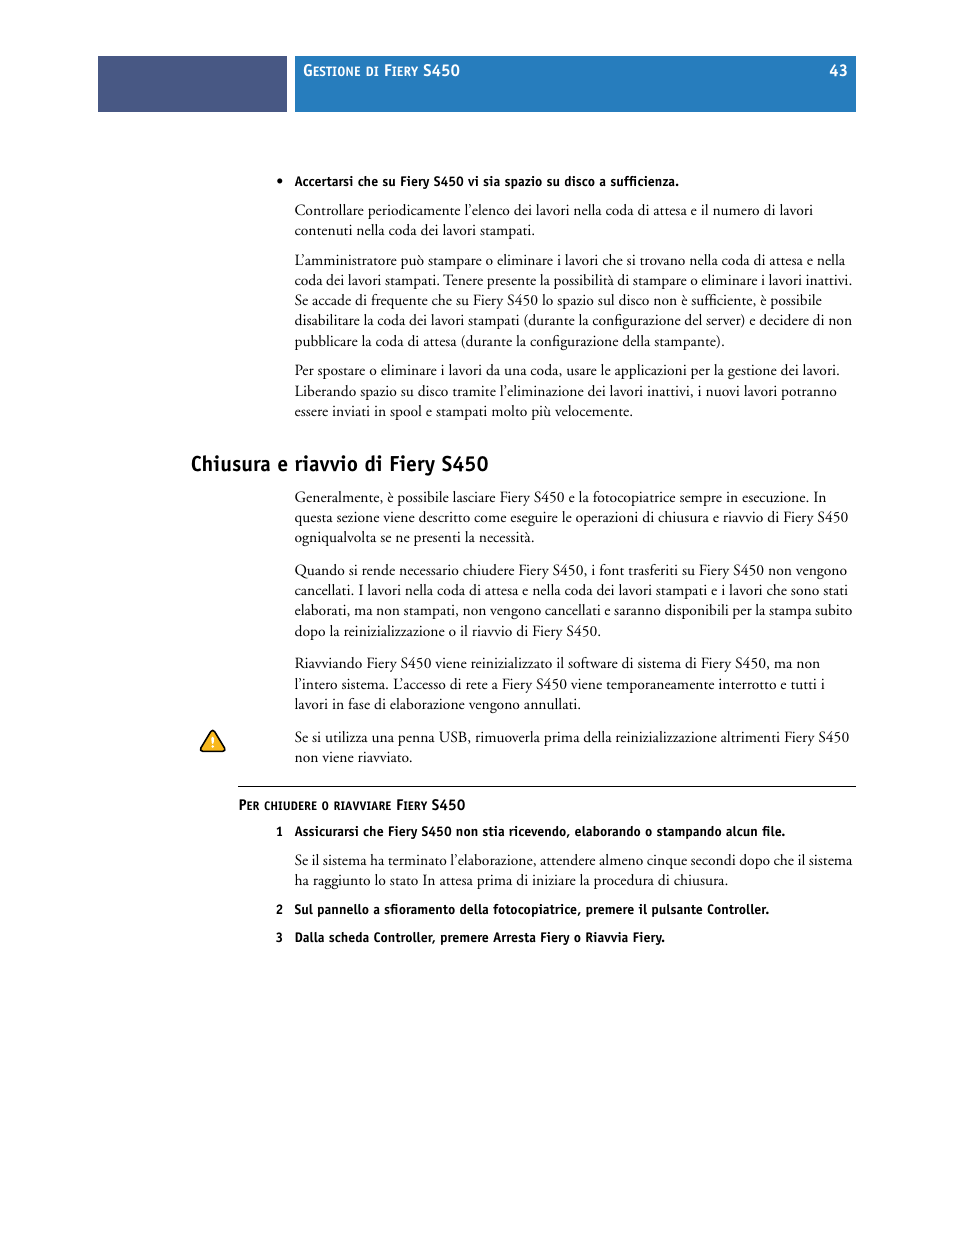 Chiusura e riavvio di fierys450, Chiusura e riavvio di fiery s450 | Konica Minolta bizhub PRO C6501P Manuale d'uso | Pagina 45 / 54